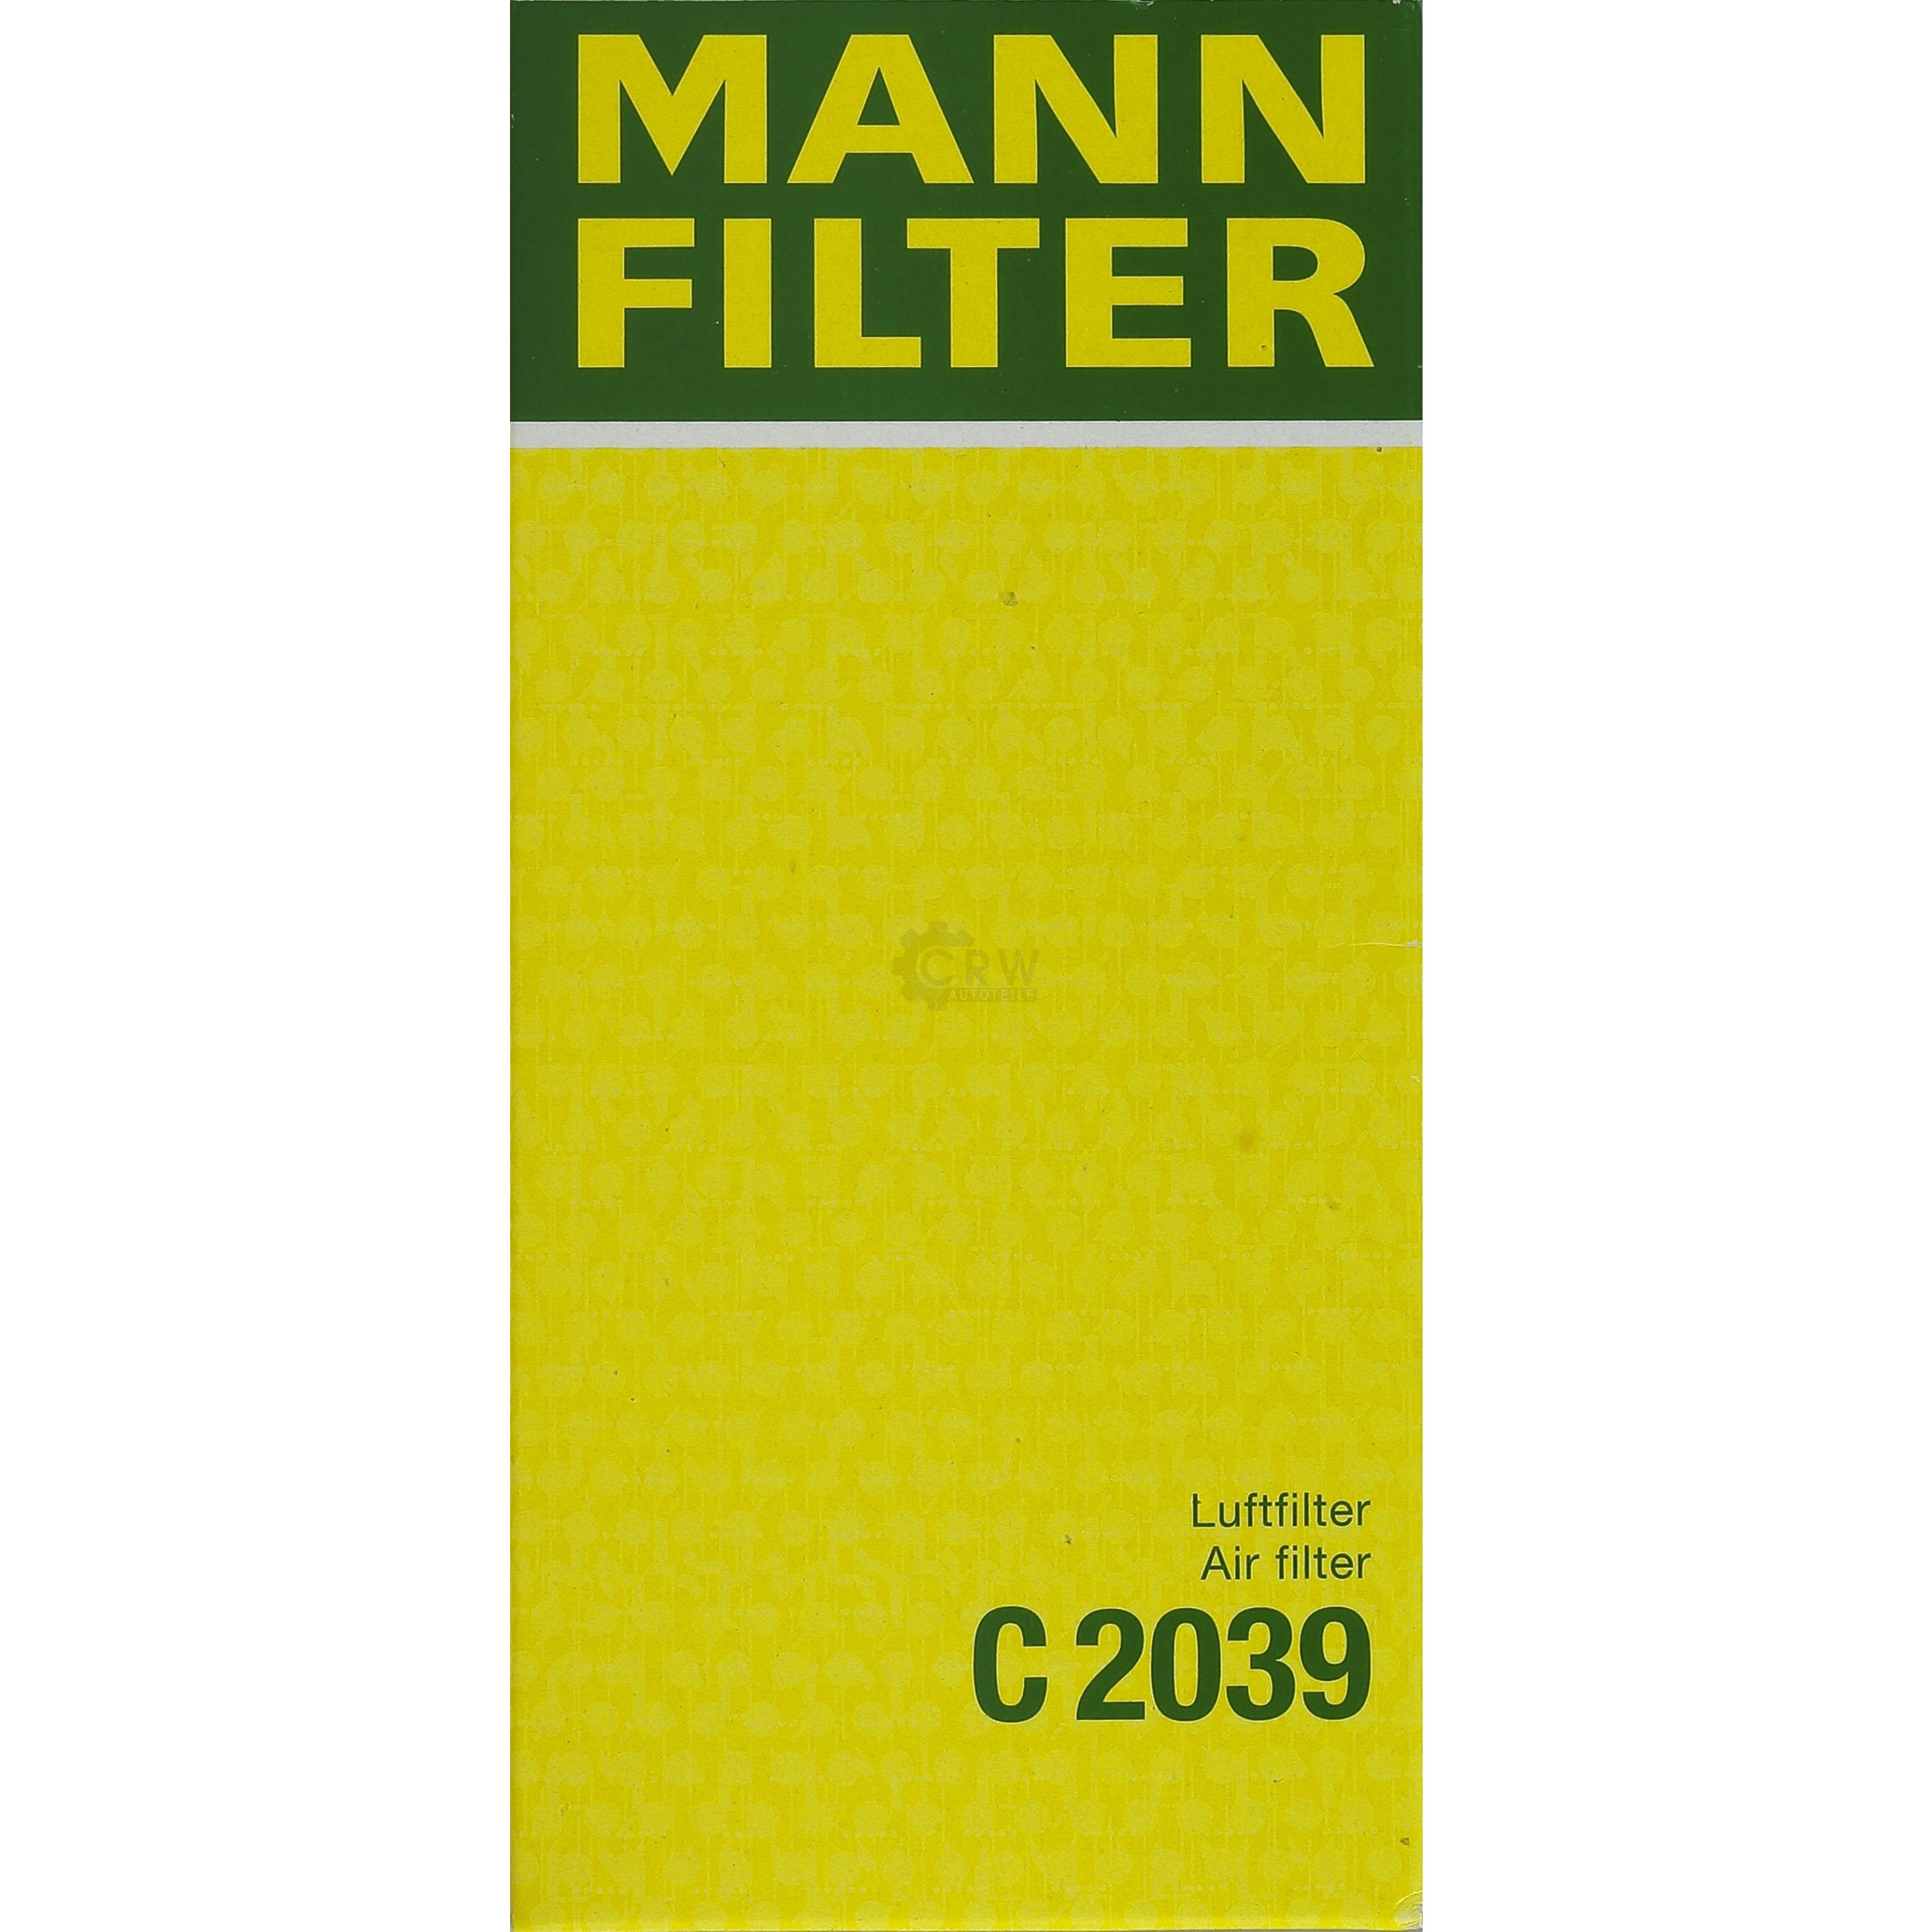 MANN-FILTER Luftfilter für VW Golf II 19E 1G1 1.6 1.8i Cat 155 1.8 17 1.5